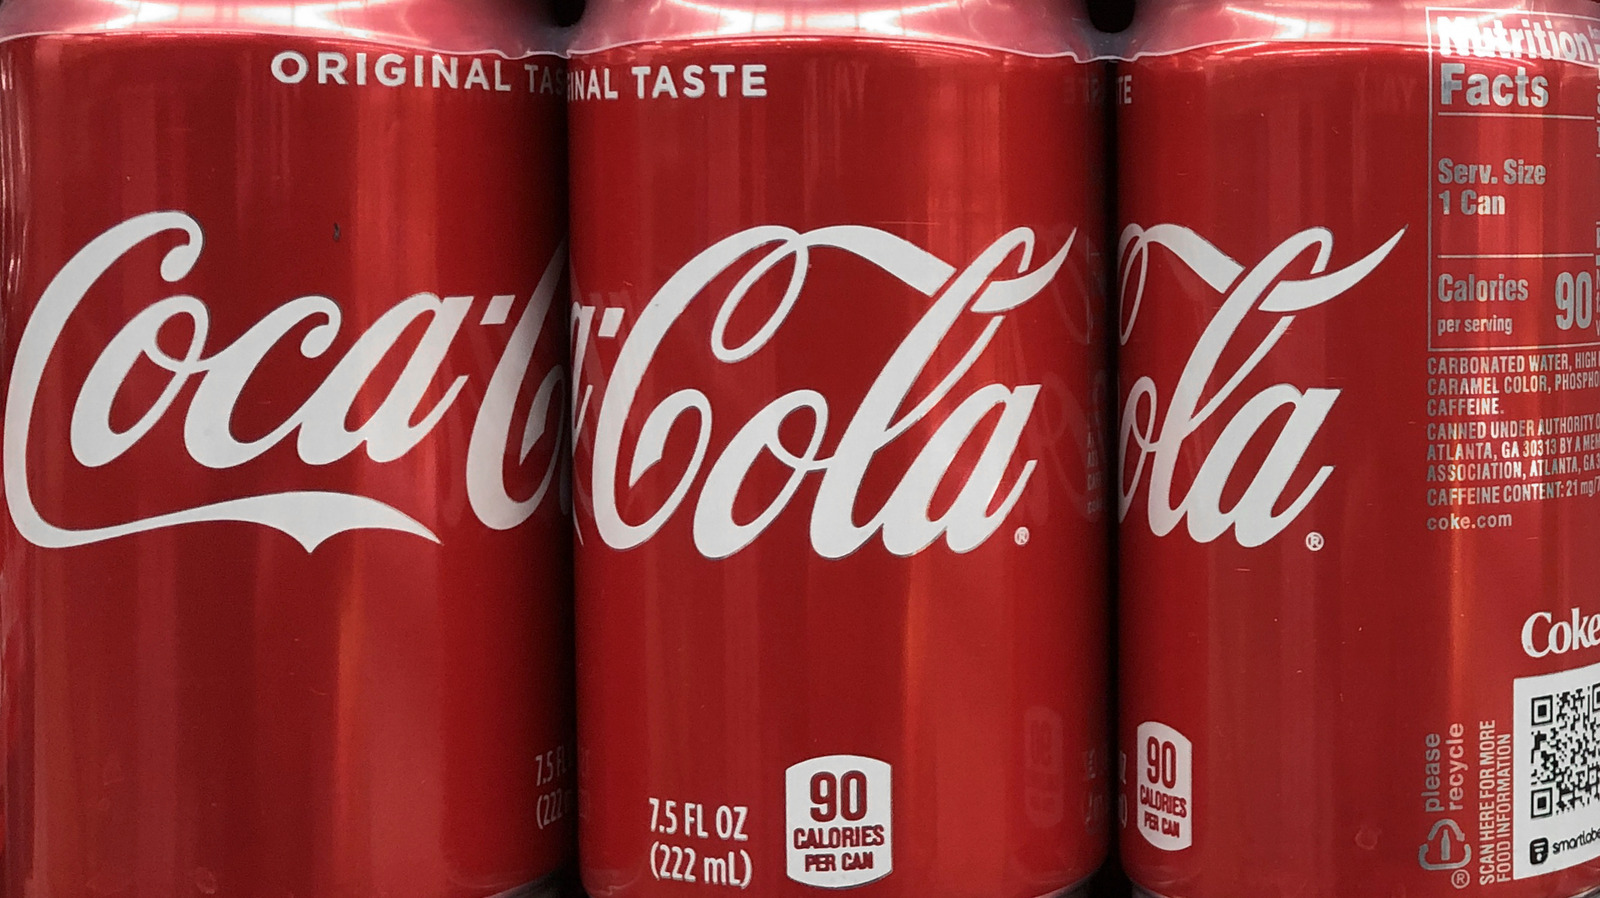 Coca-Cola Released Cherry Vanilla Coke